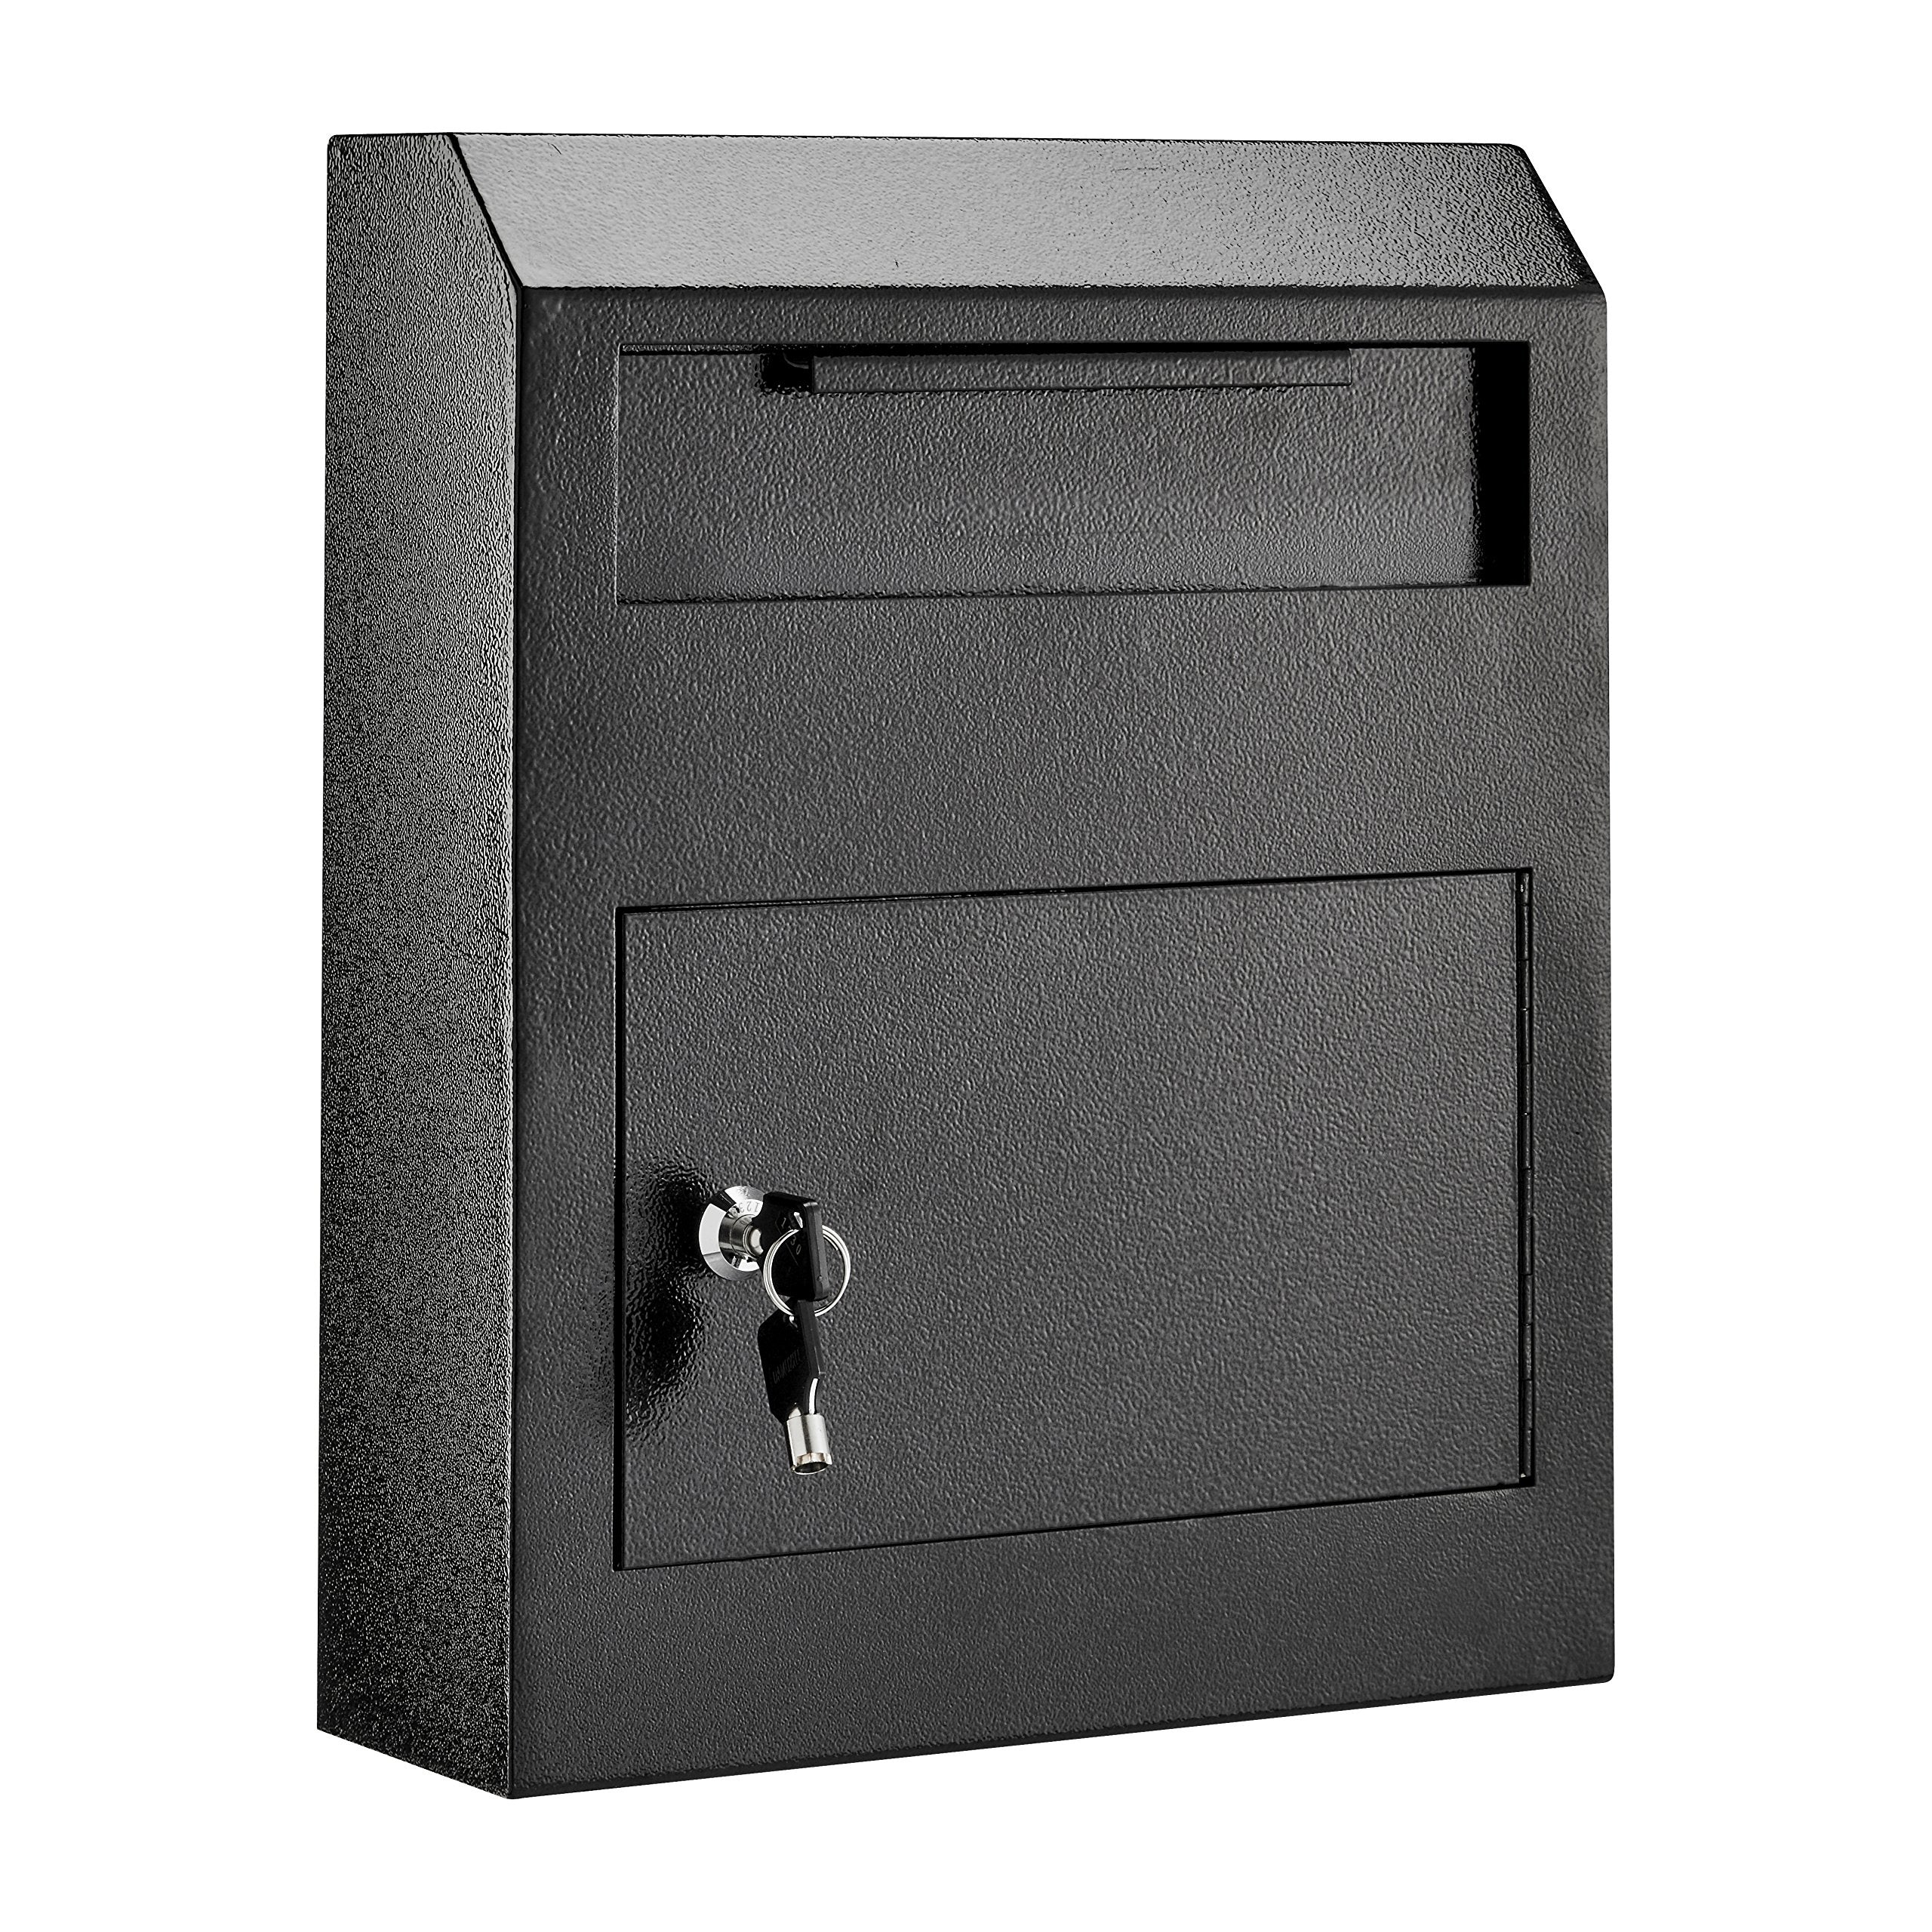 AdirOffice Heavy Duty Secured Safe Drop Box - Suggestion Box - Locking Mailbox - Key Drop Box - Wall Mounted Mail Box - Safe Lock Box - Ballot Box - Donation Box  - Like New